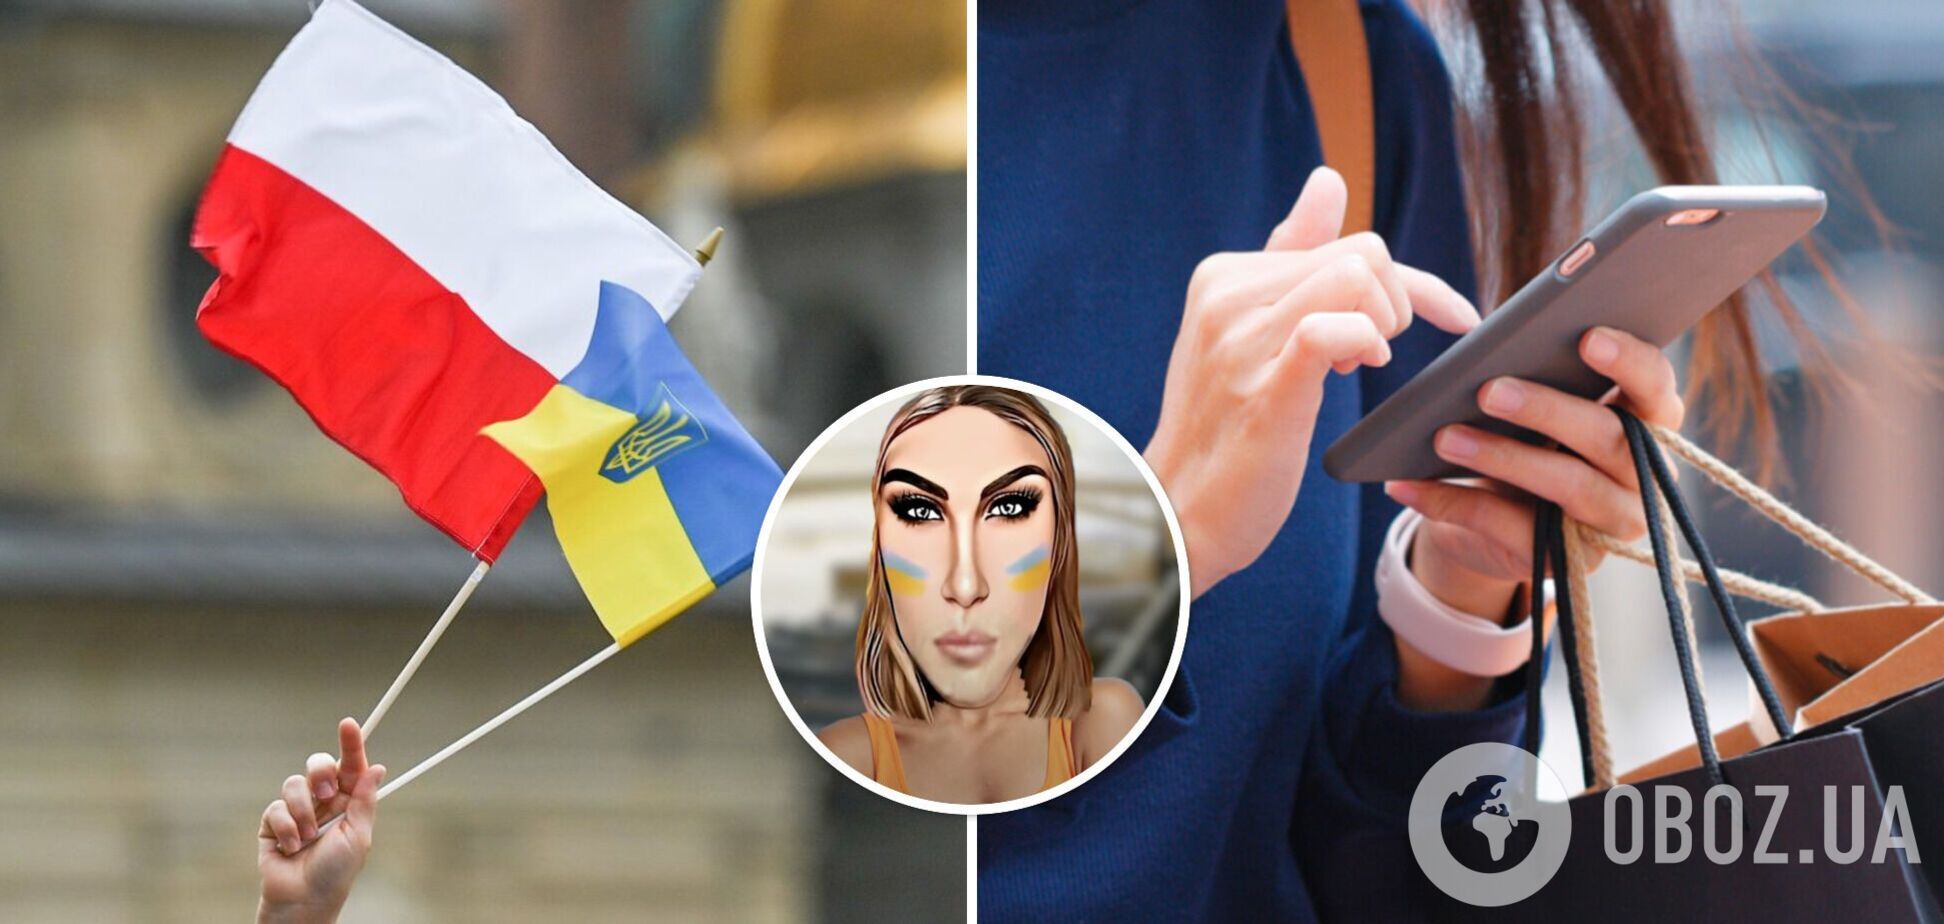 'Почему не в окопе?' Кто такая 'Оля UA', которая разводит 'зраду', и как образ украинки в Польше стал мемом